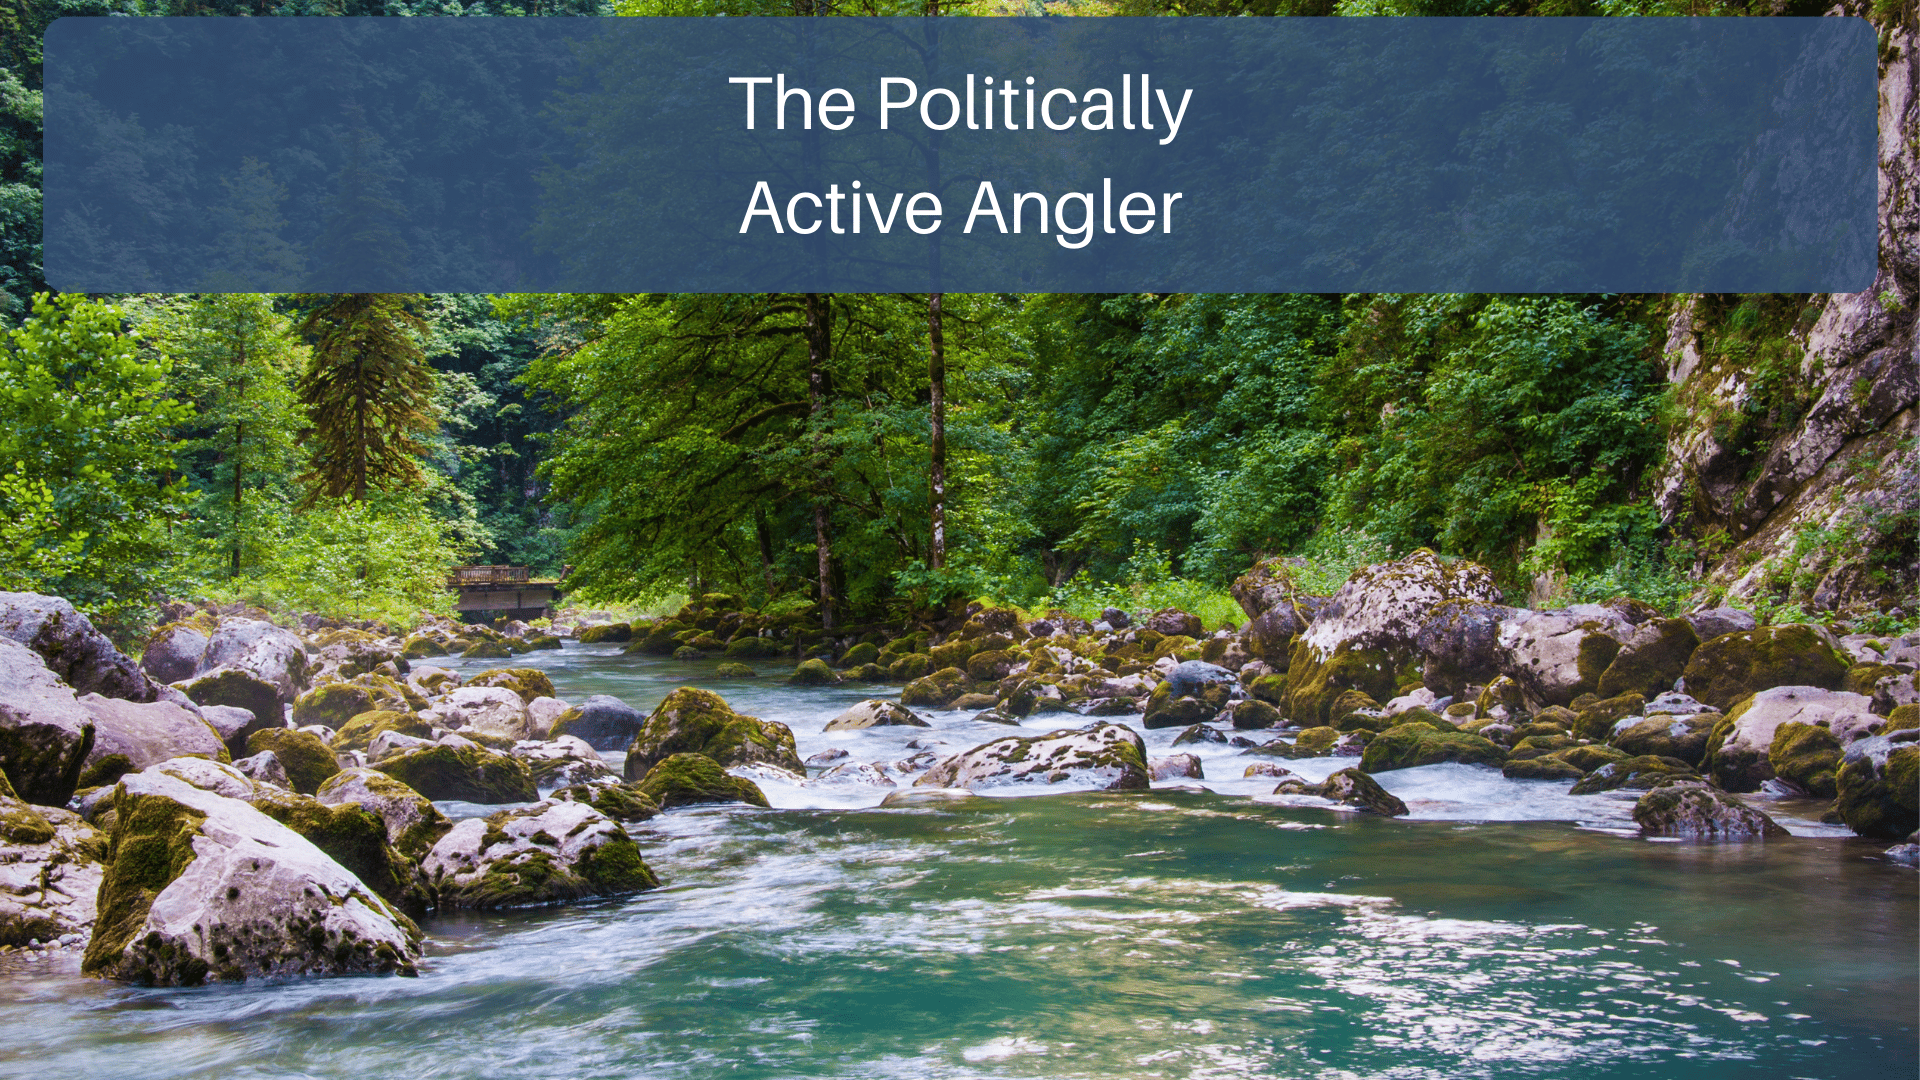 The Politically Active Angler